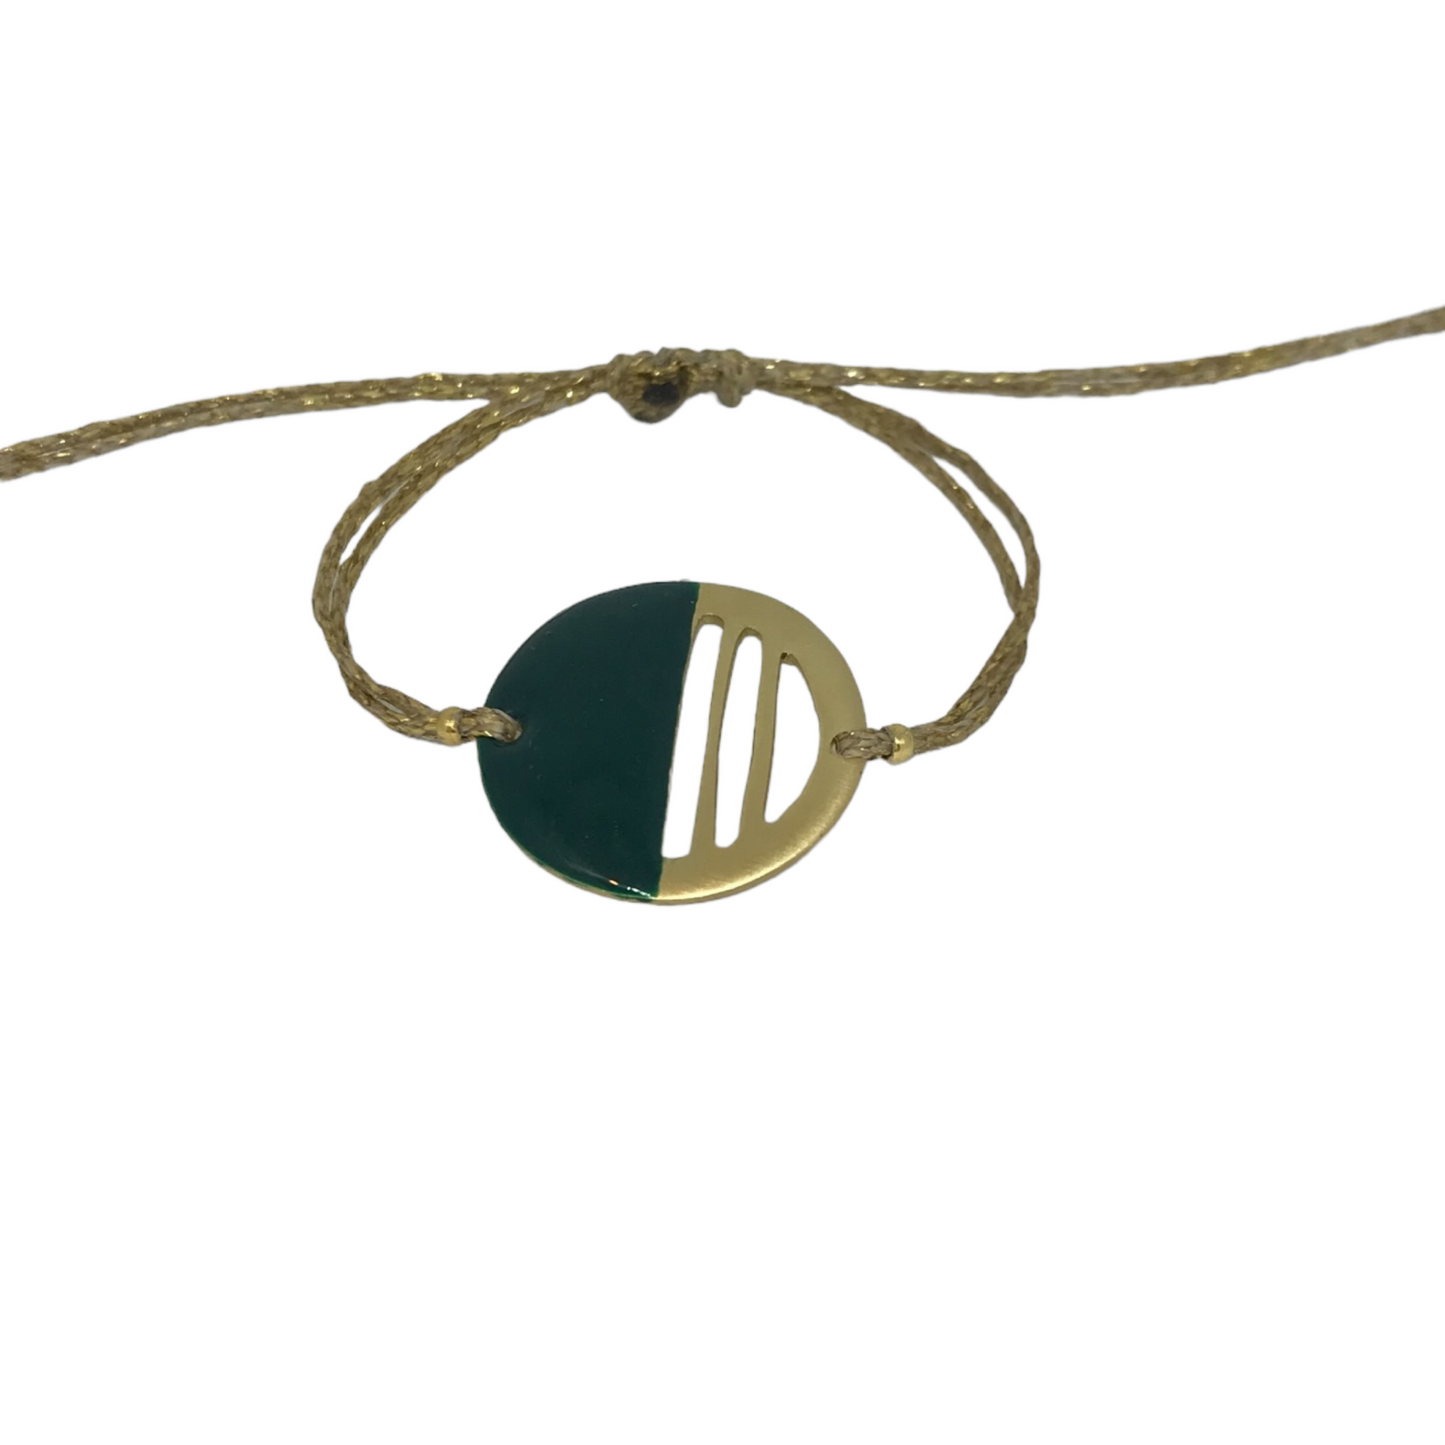    Heatwavesbracelet1  4091 × 3068px  Brass bracelet with resin | Heat Waves Bracelet - CURIUDO